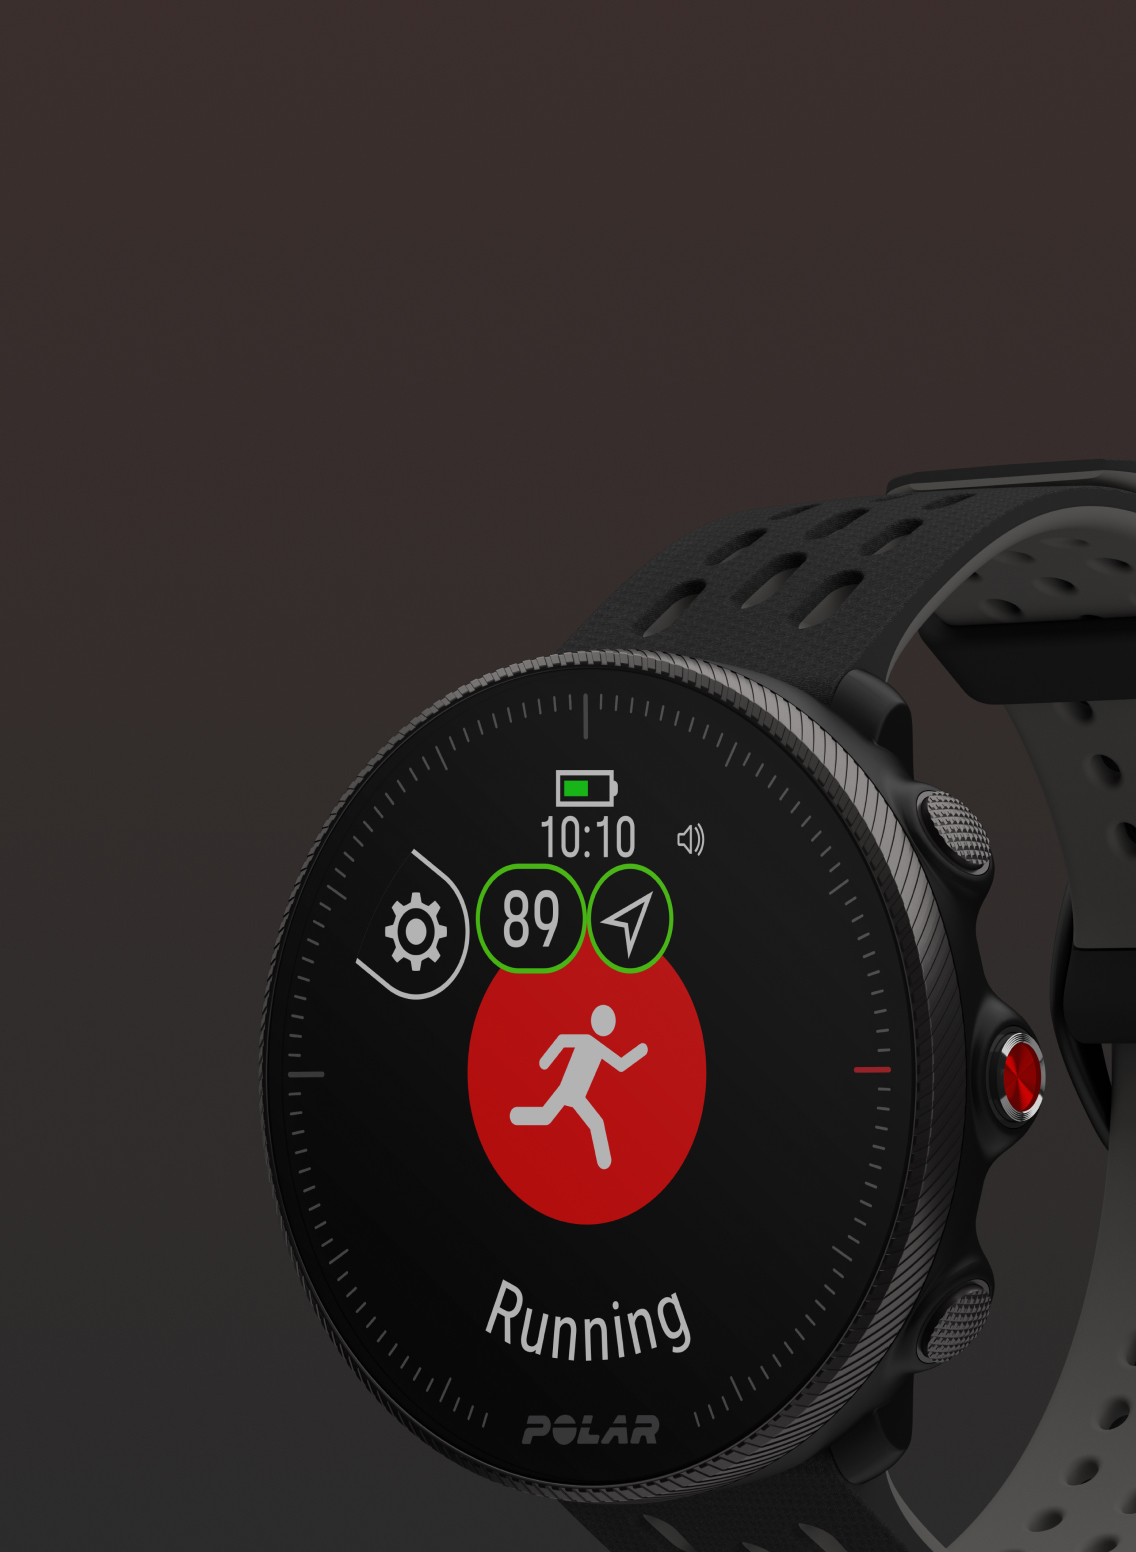  Polar Vantage M2 - Reloj inteligente multideportivo avanzado -  GPS integrado, monitor cardíaco basado en la muñeca entrenamientos diarios  - Seguimiento del sueño y la recuperación - Controles de música, clima